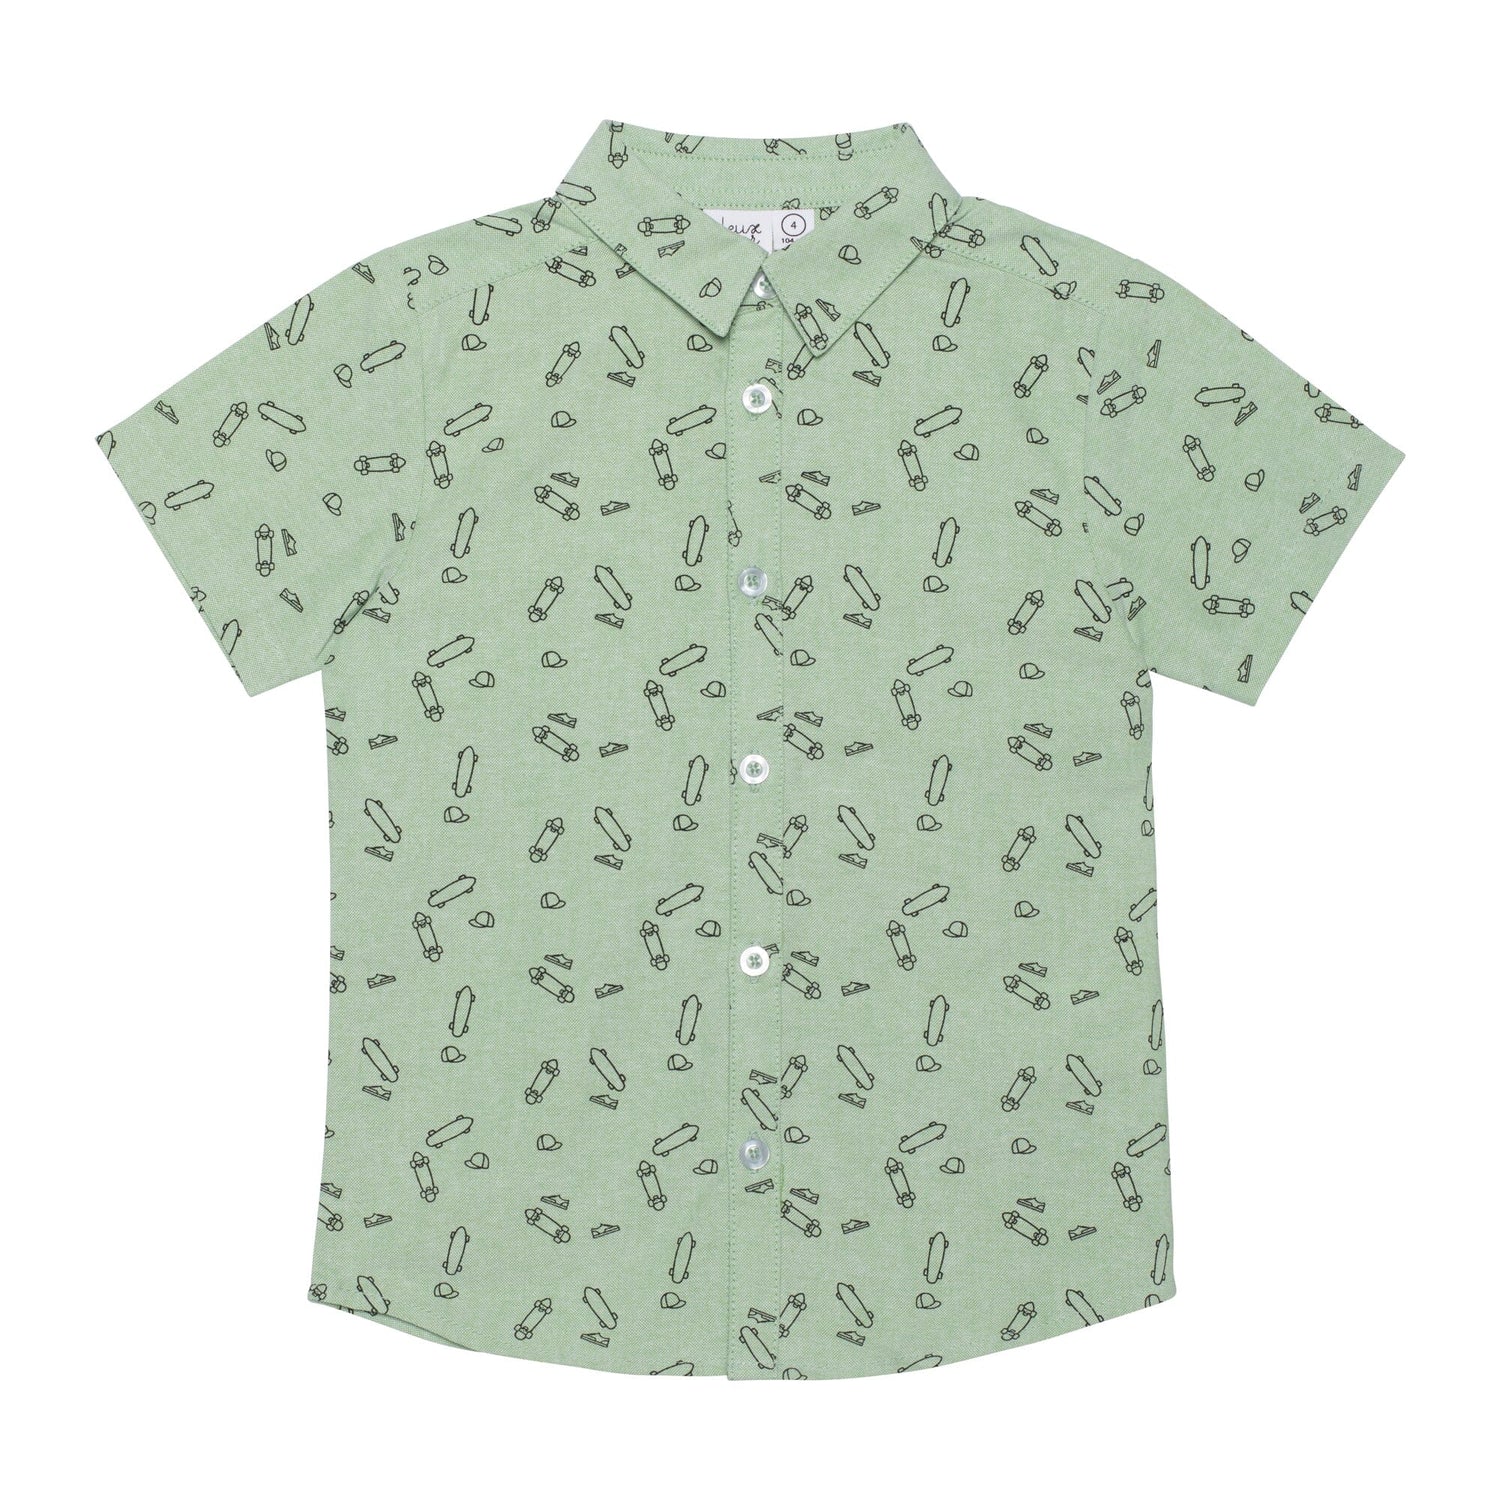 Printed Cotton Shirt Soft Green Skateboards - E30U16_095